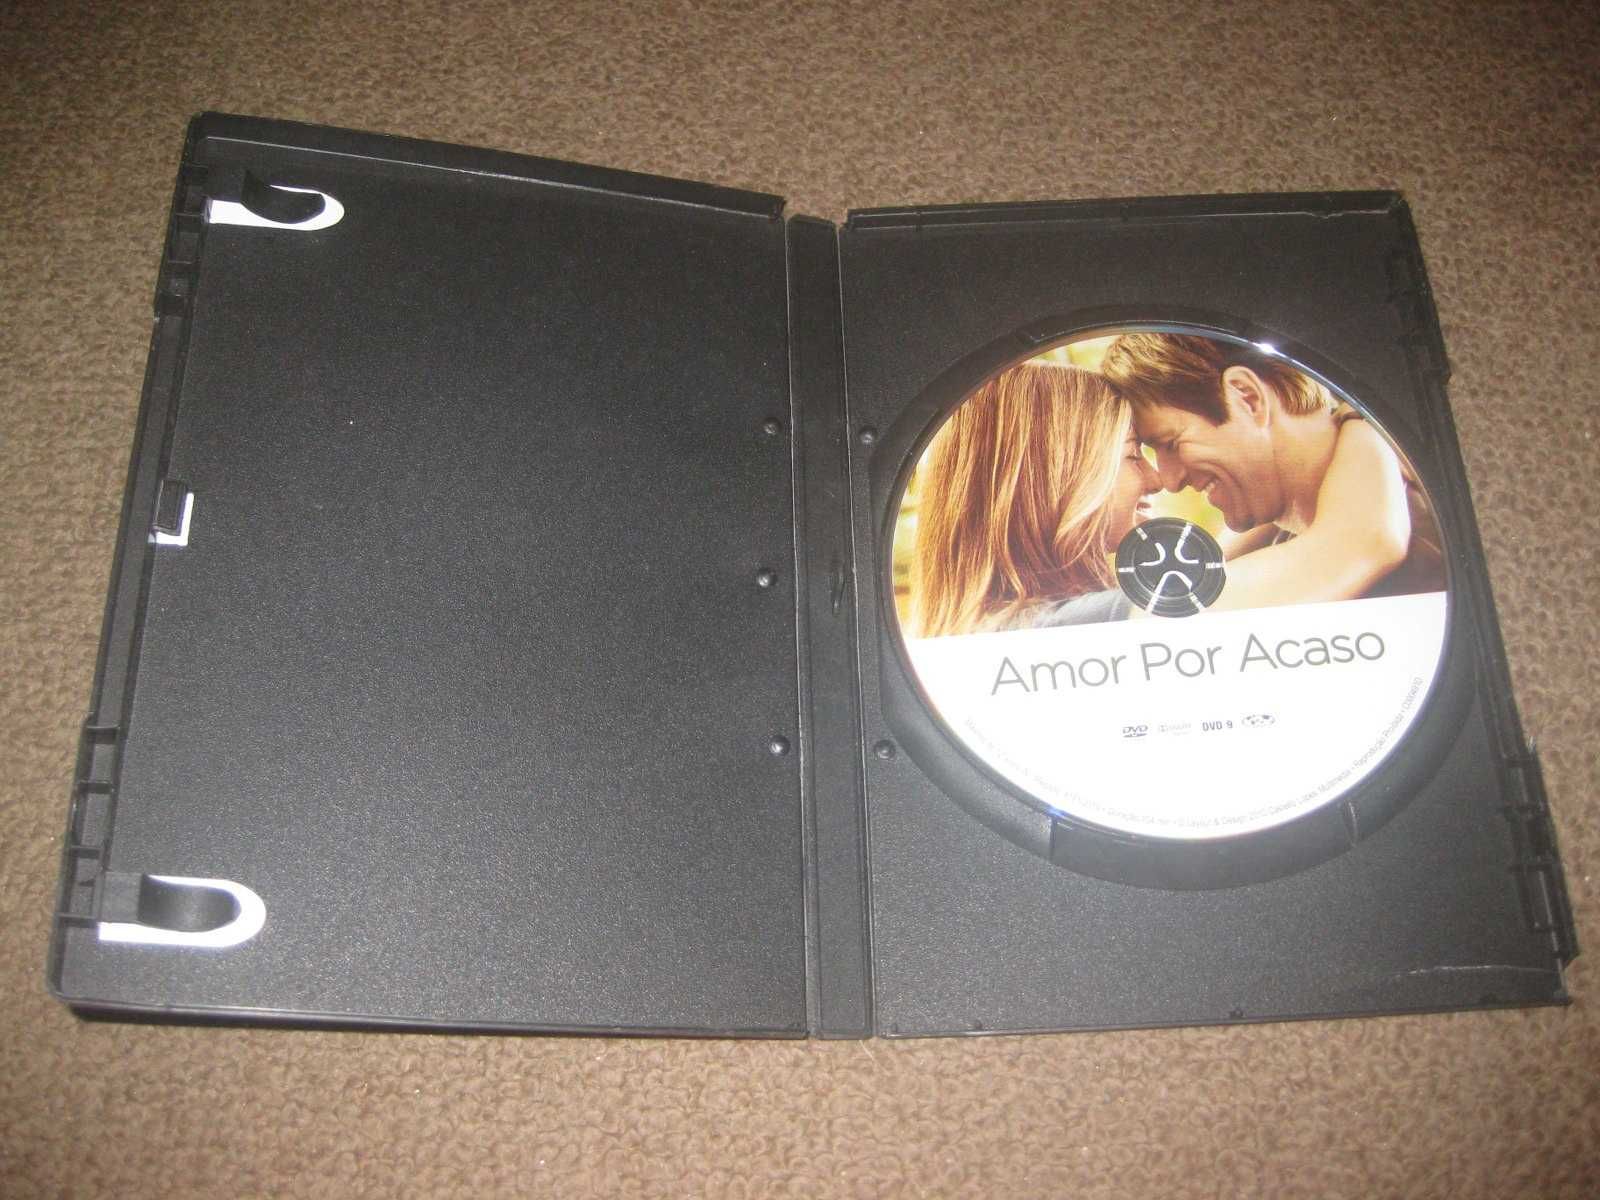 DVD "Amor por Acaso" com Jennifer Aniston